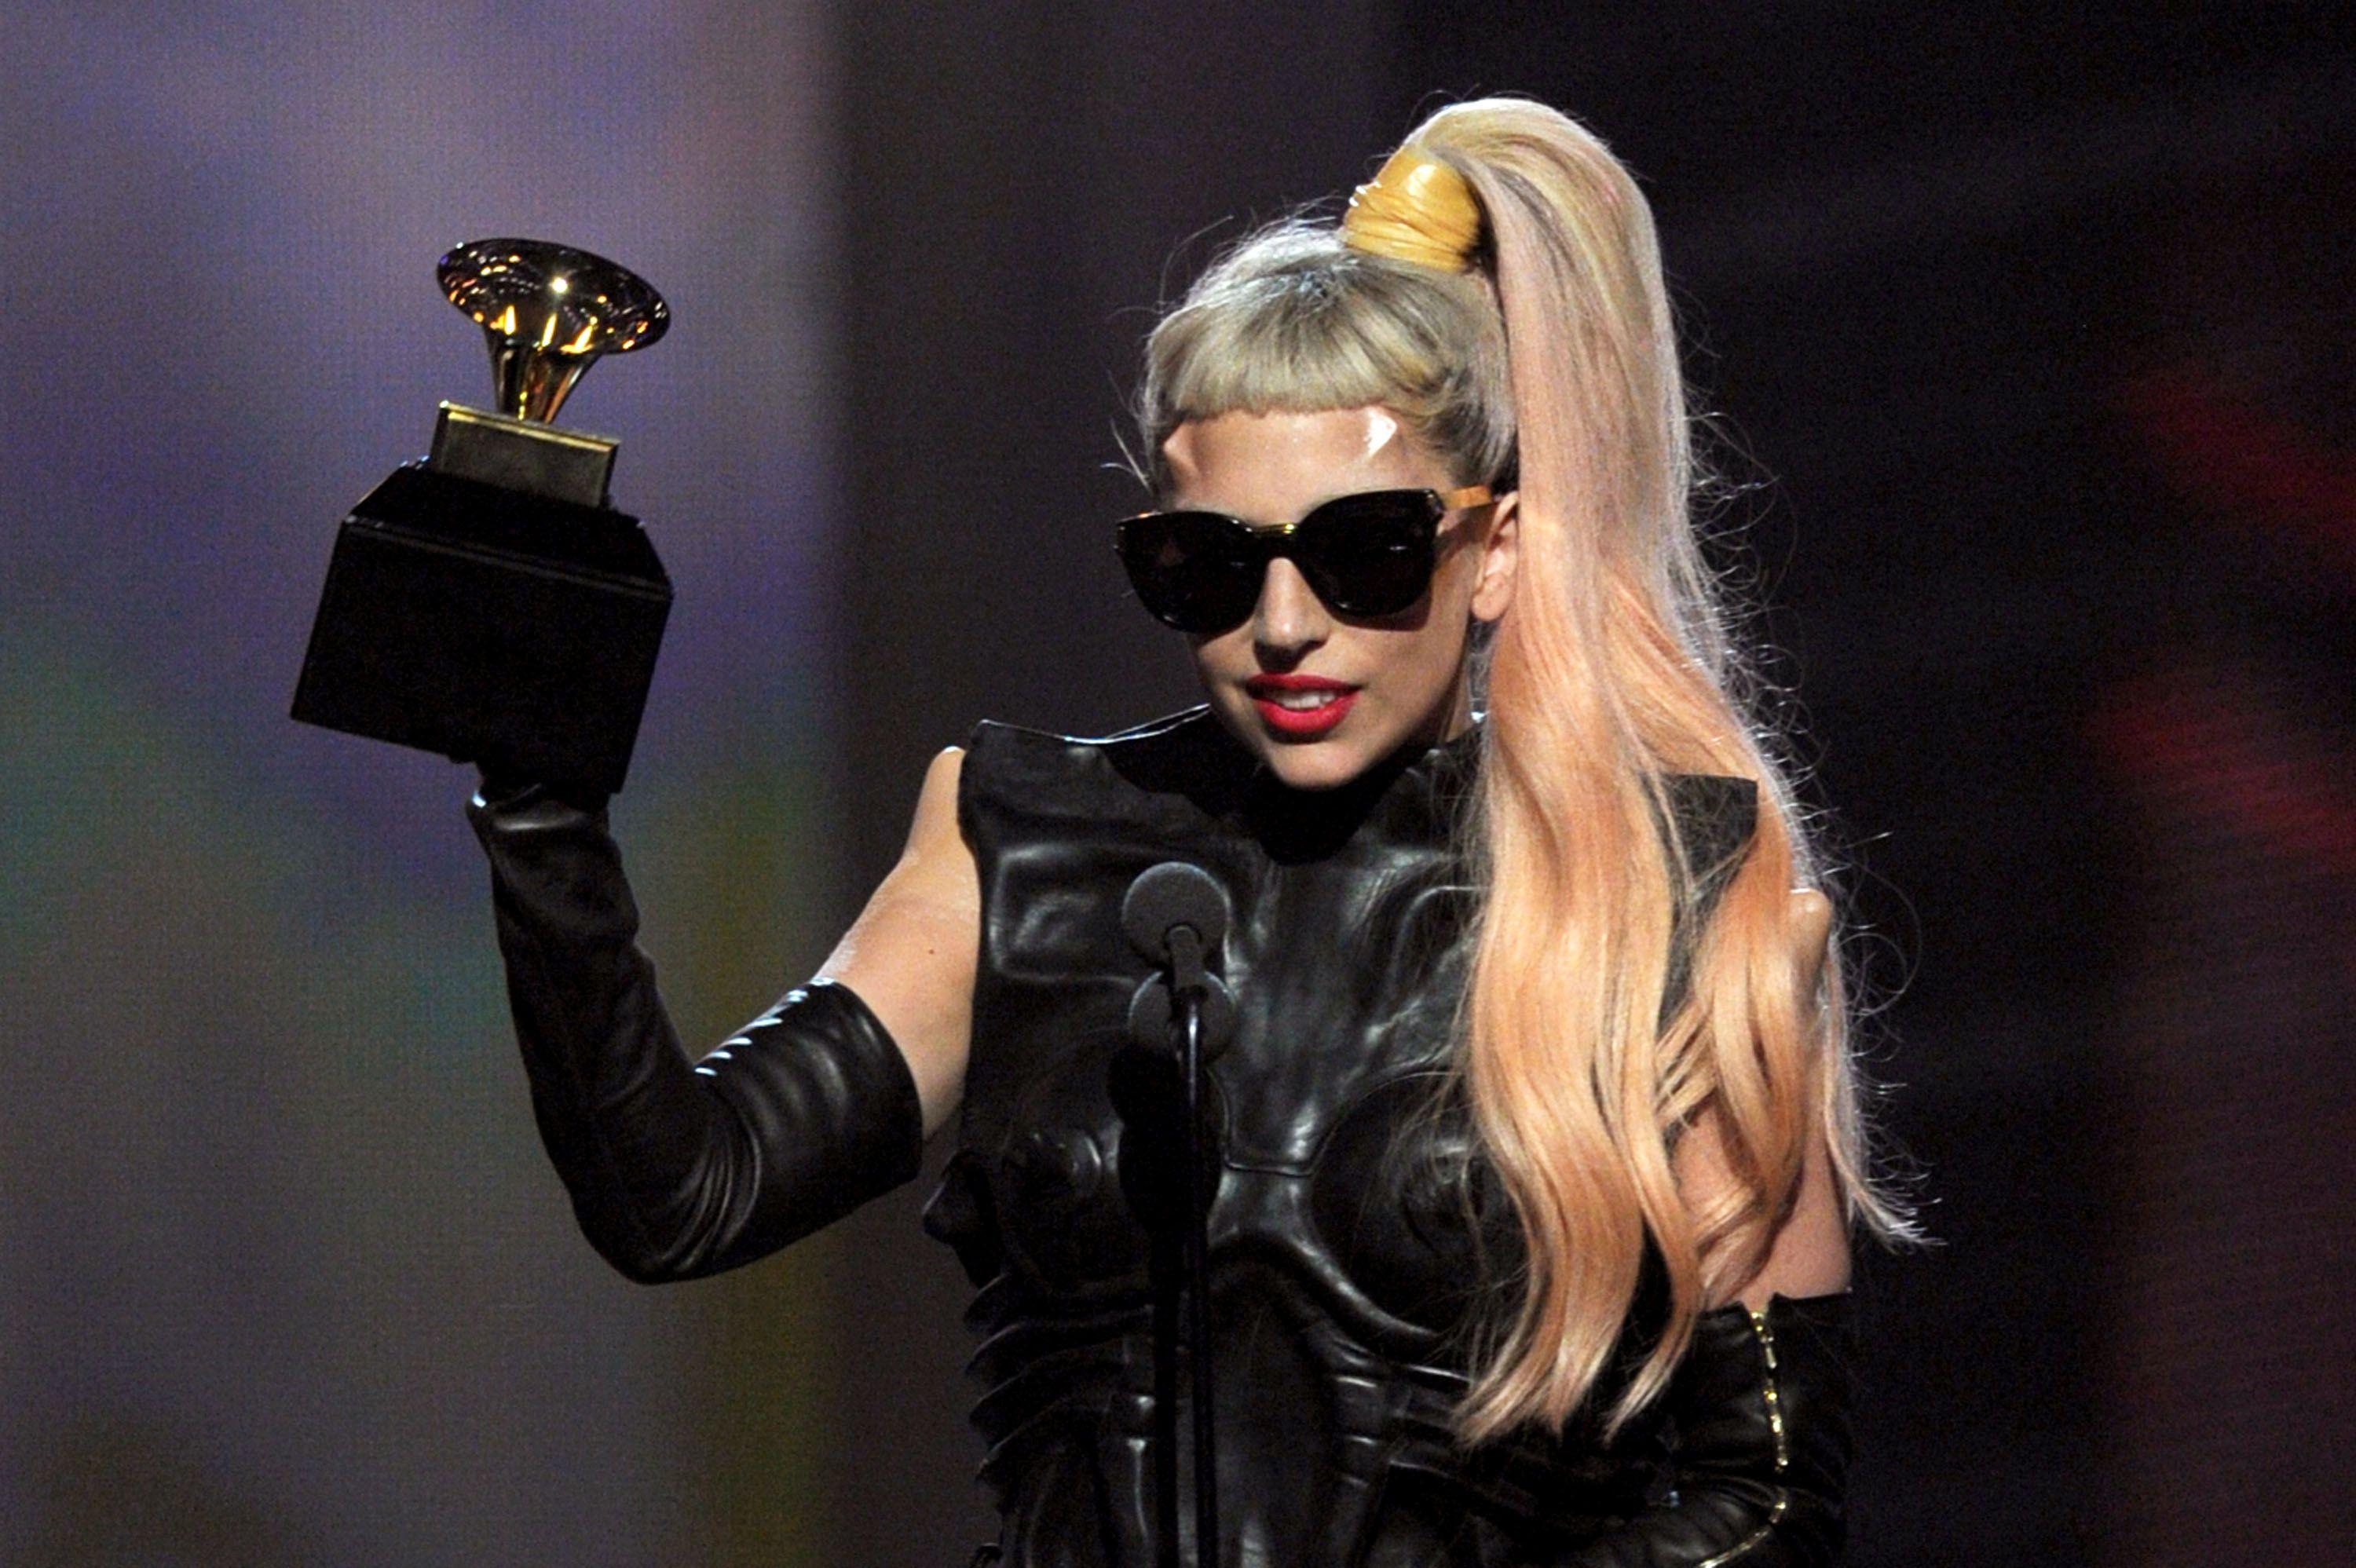 Lady Gaga receives award at the 2014 Grammy Awards